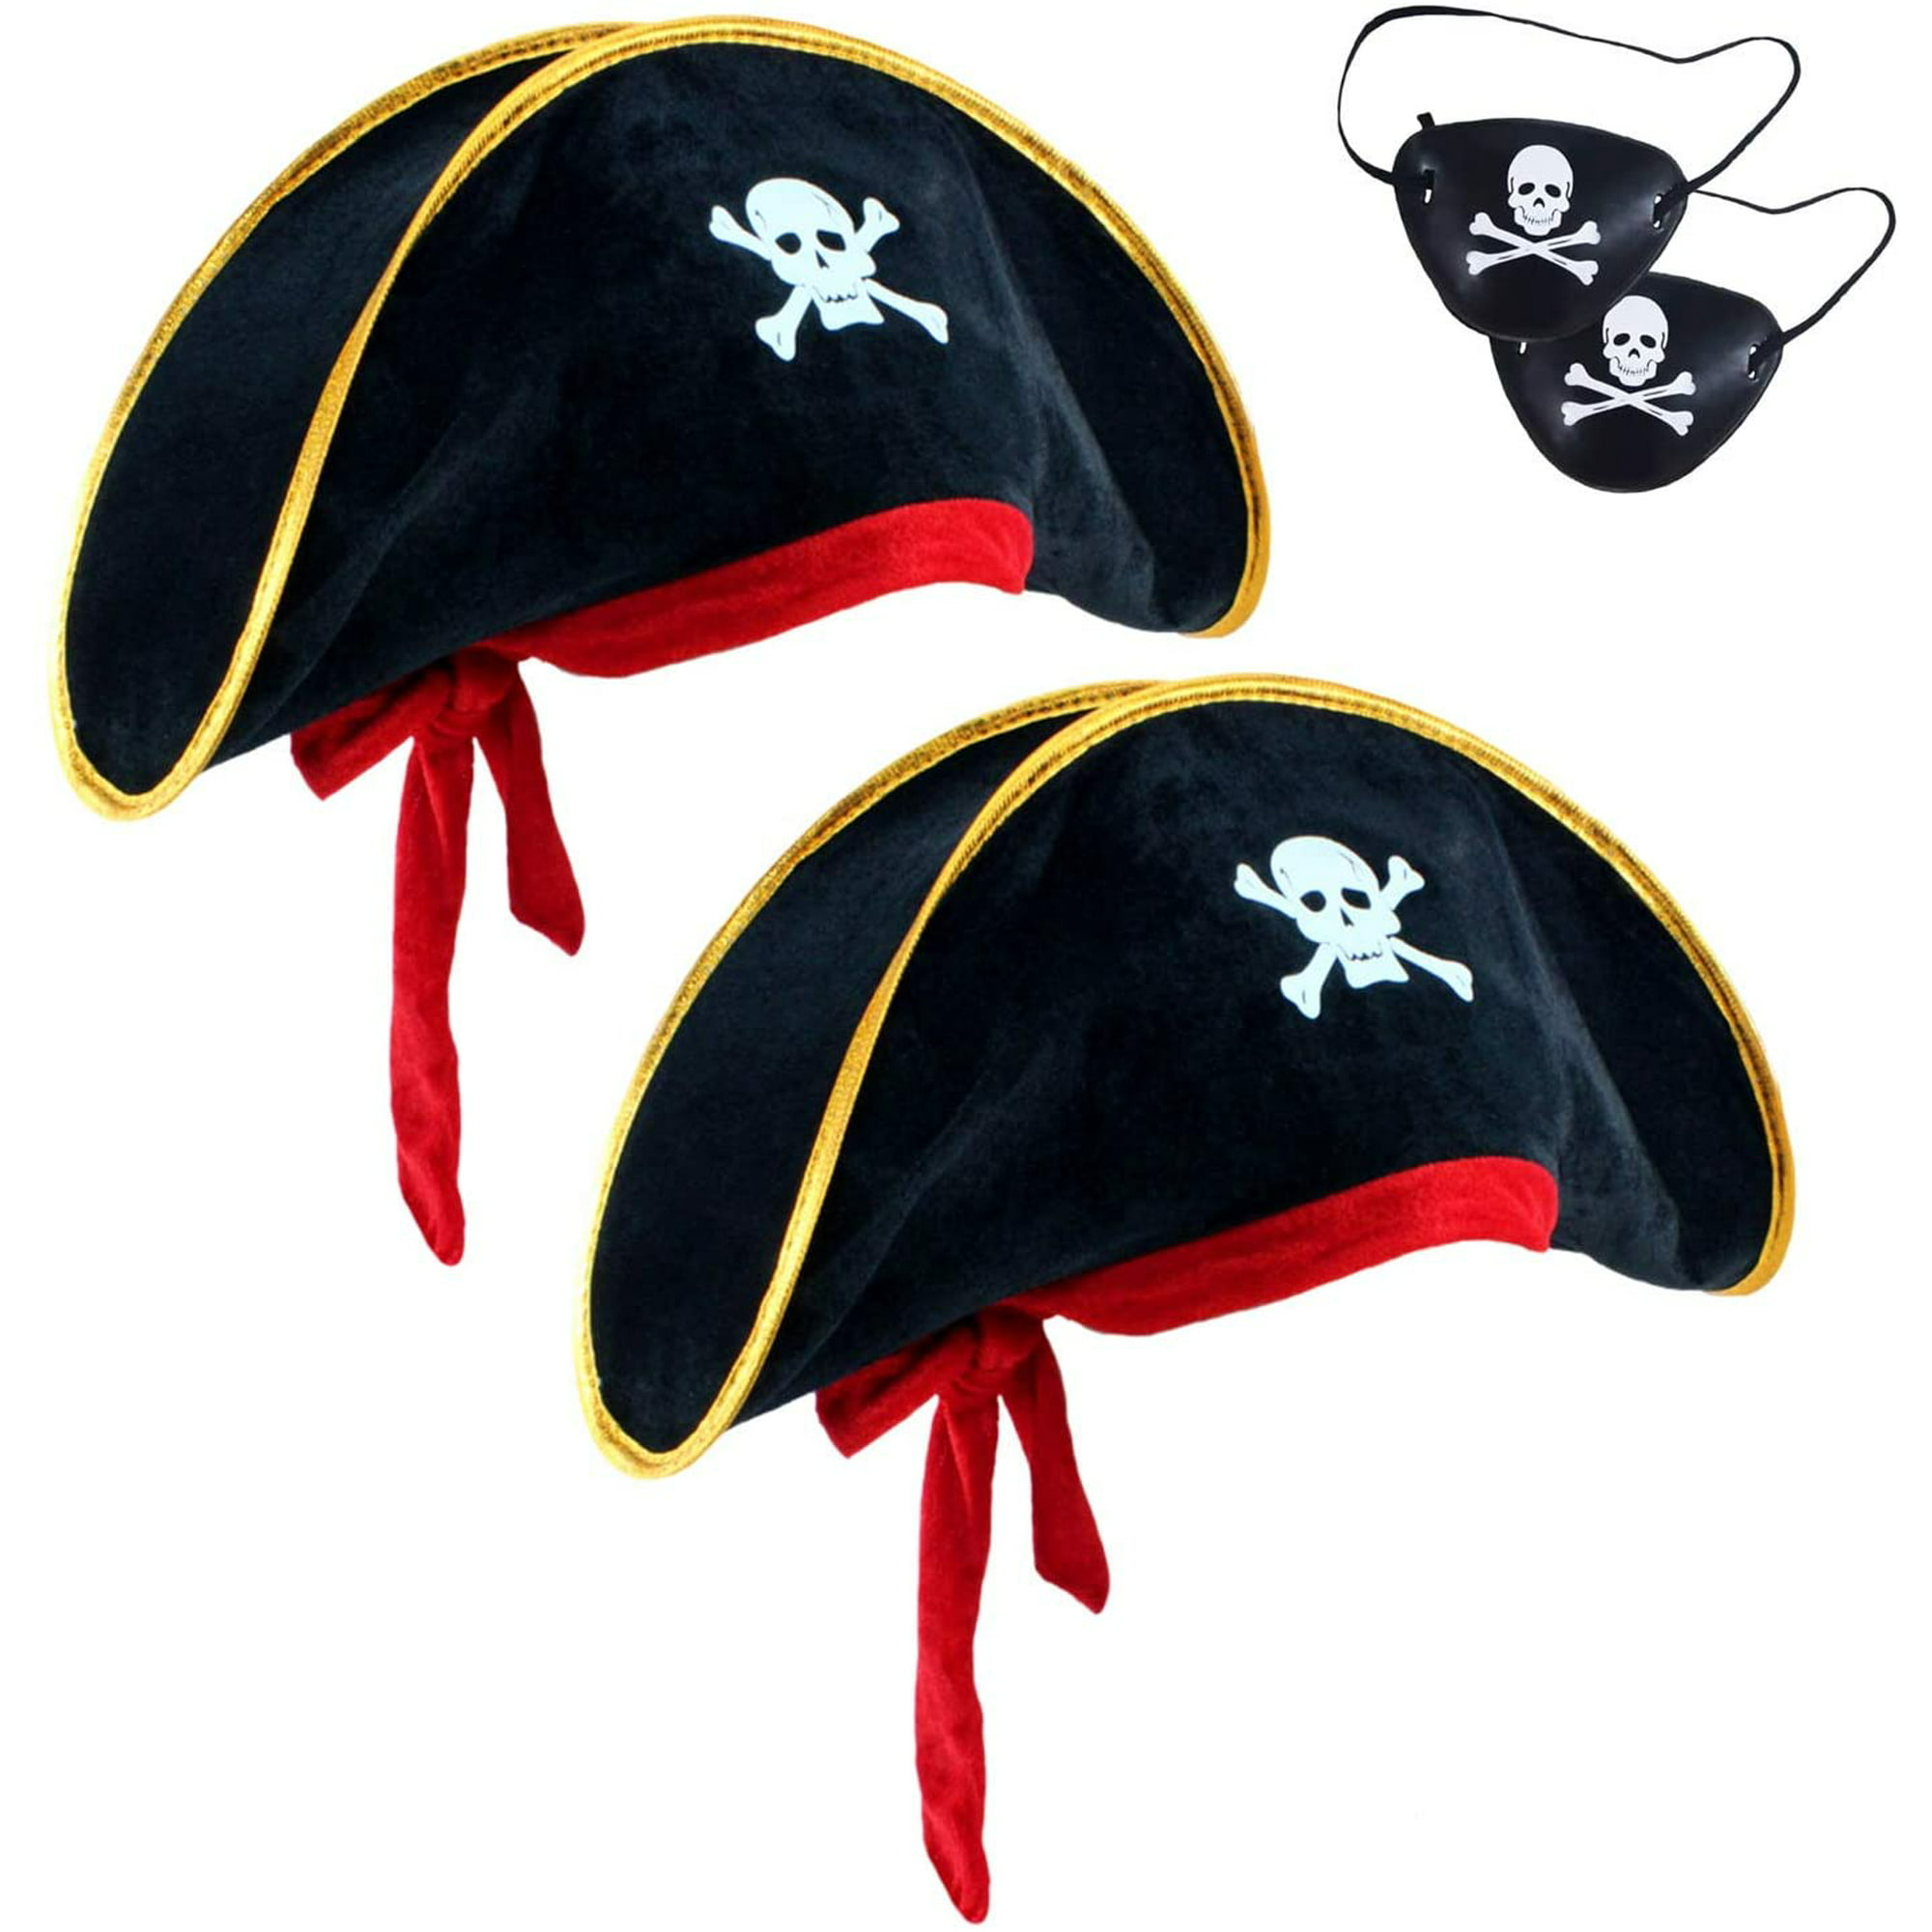 6 piezas encantadoras accesorios para disfraz de pirata caribeño: 2  sombreros de capitán con estampado de calavera, 2 parches en los ojos, 2  espadas